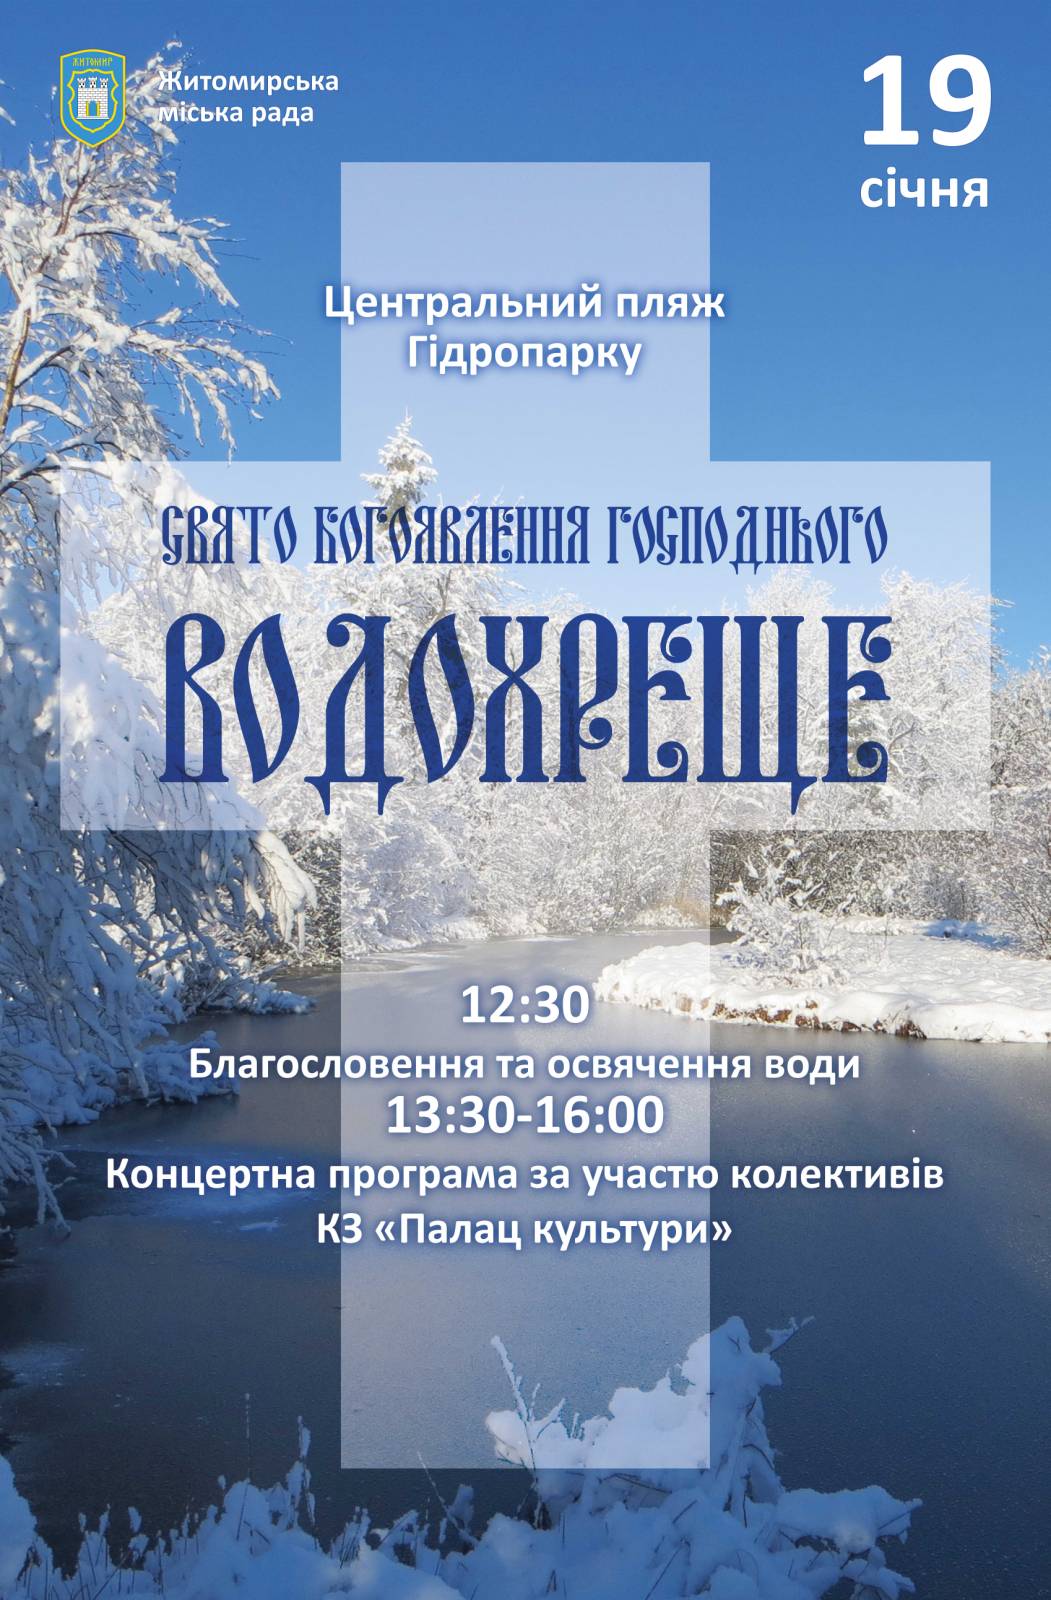 19 січня у Житомирі відбудеться святкування Водохреща